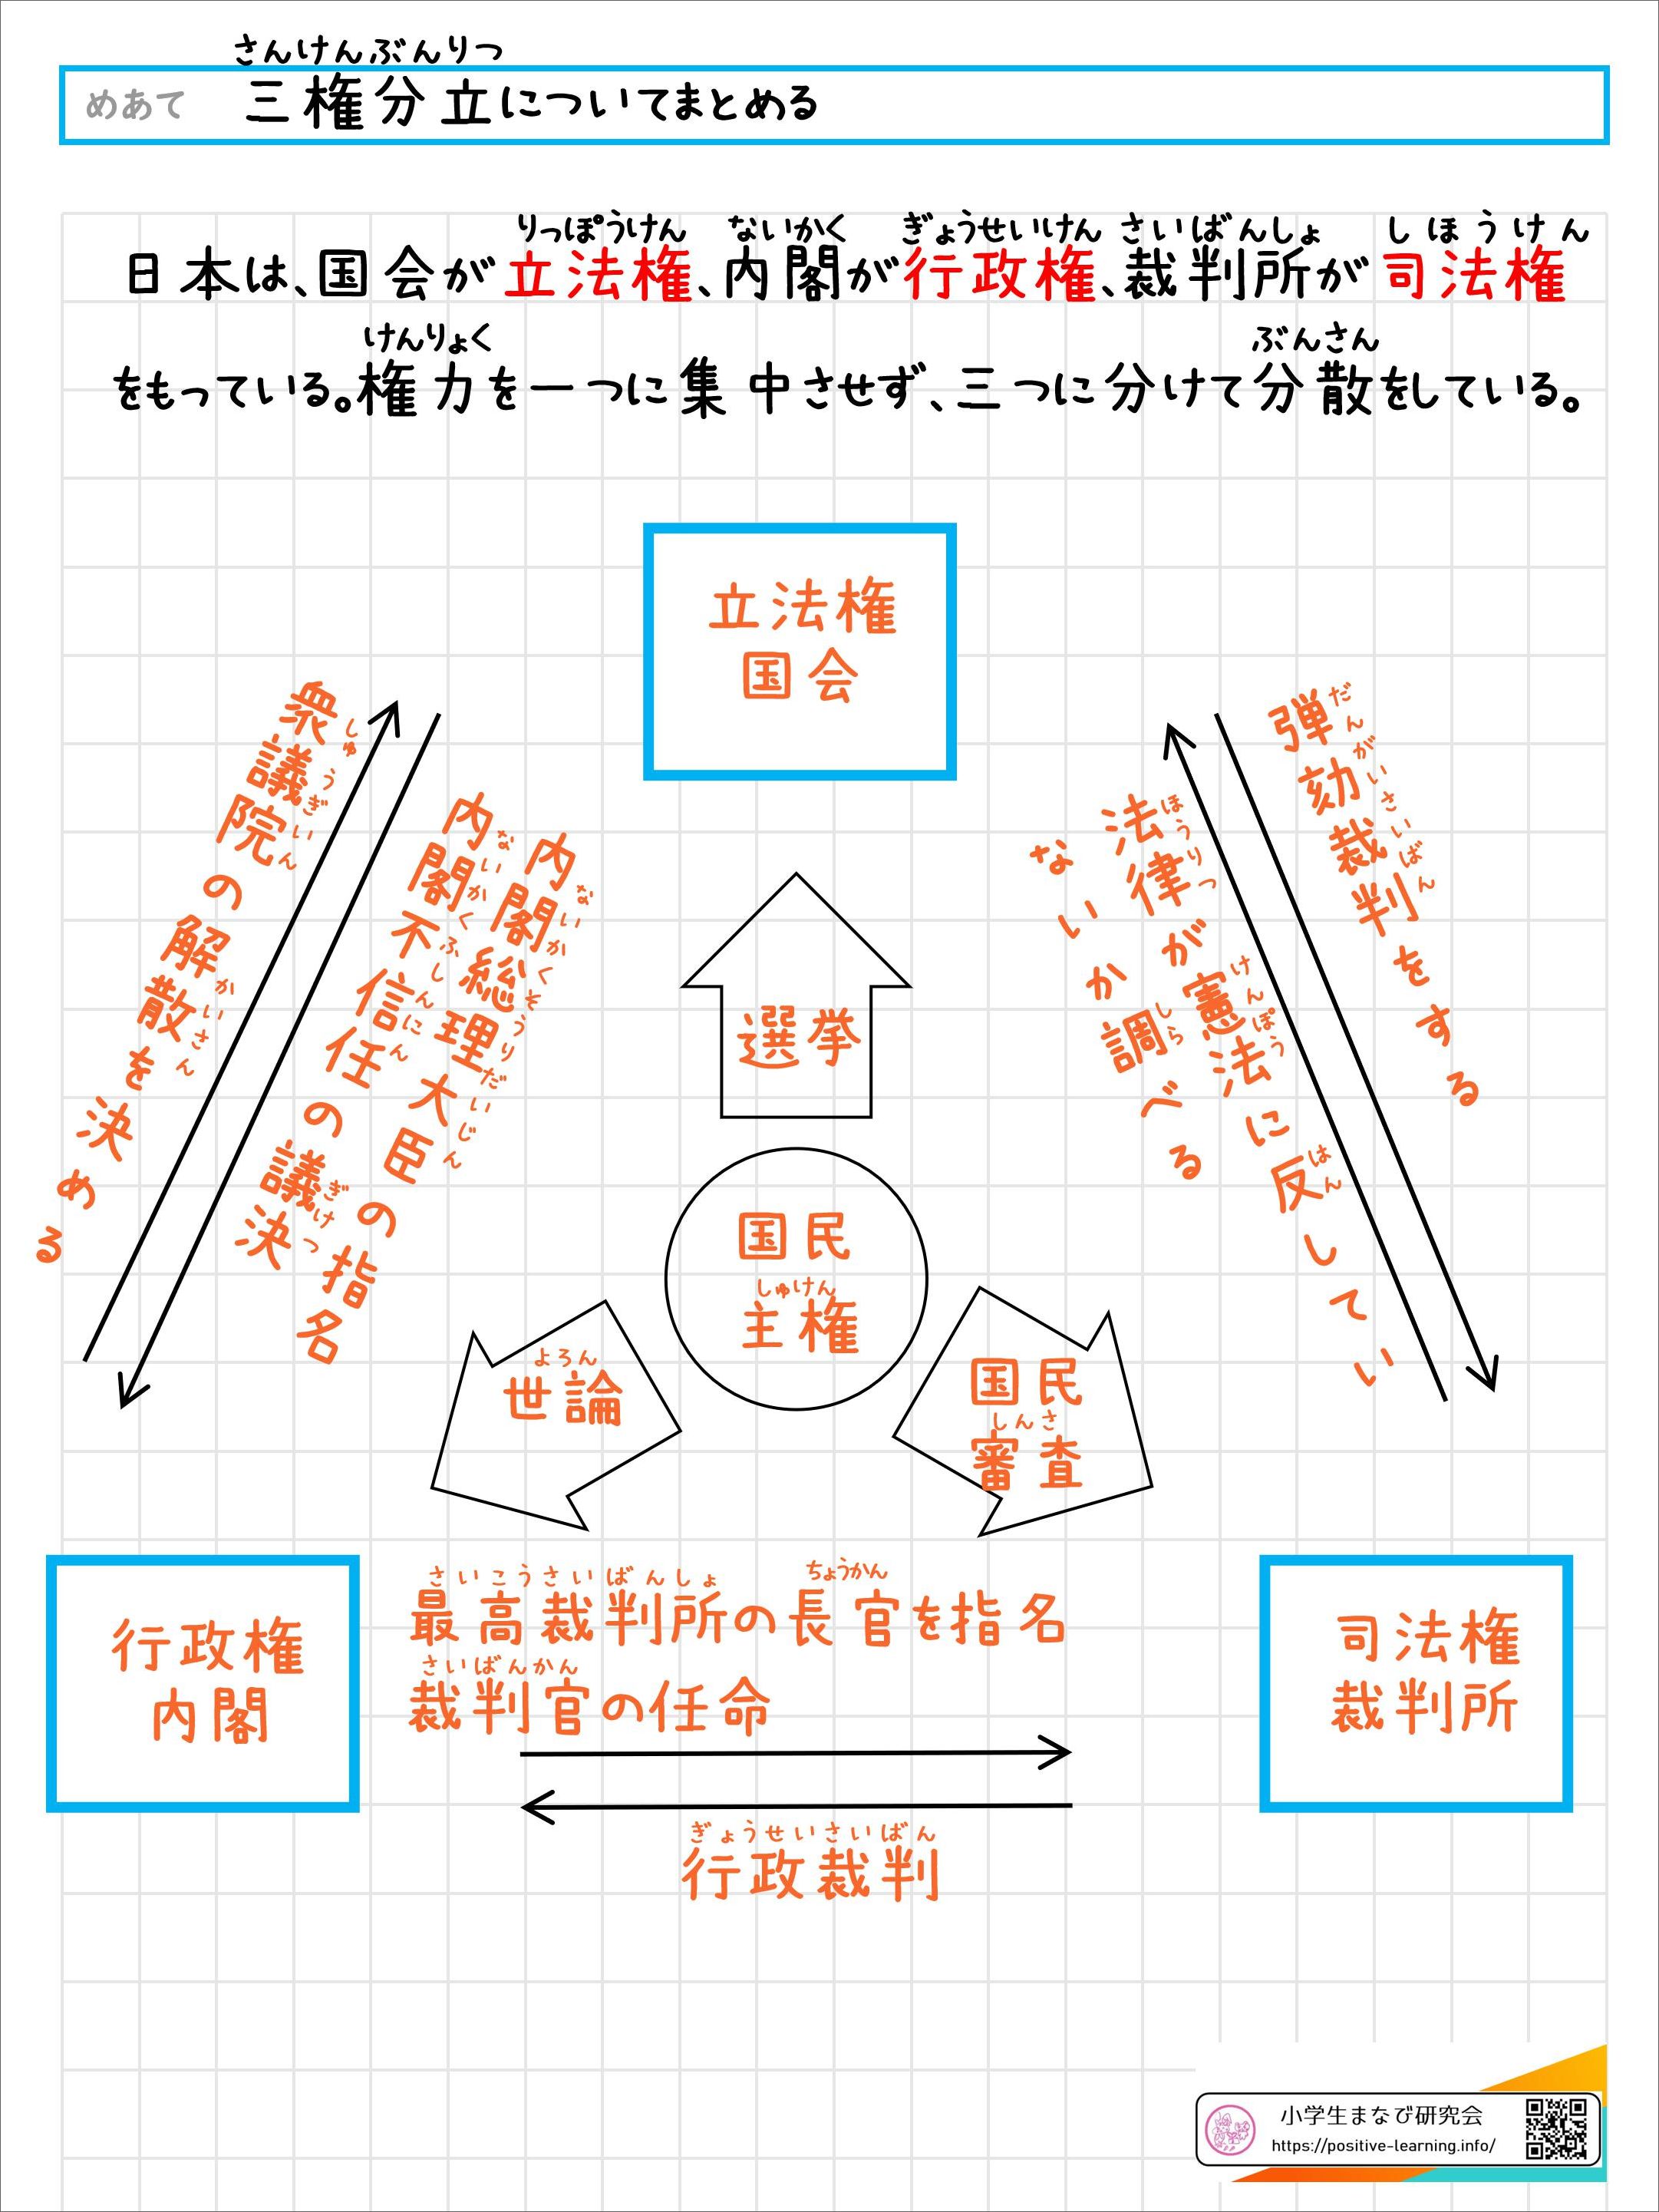 自主学習ノート社会：日本国憲法の三原則と三権分立